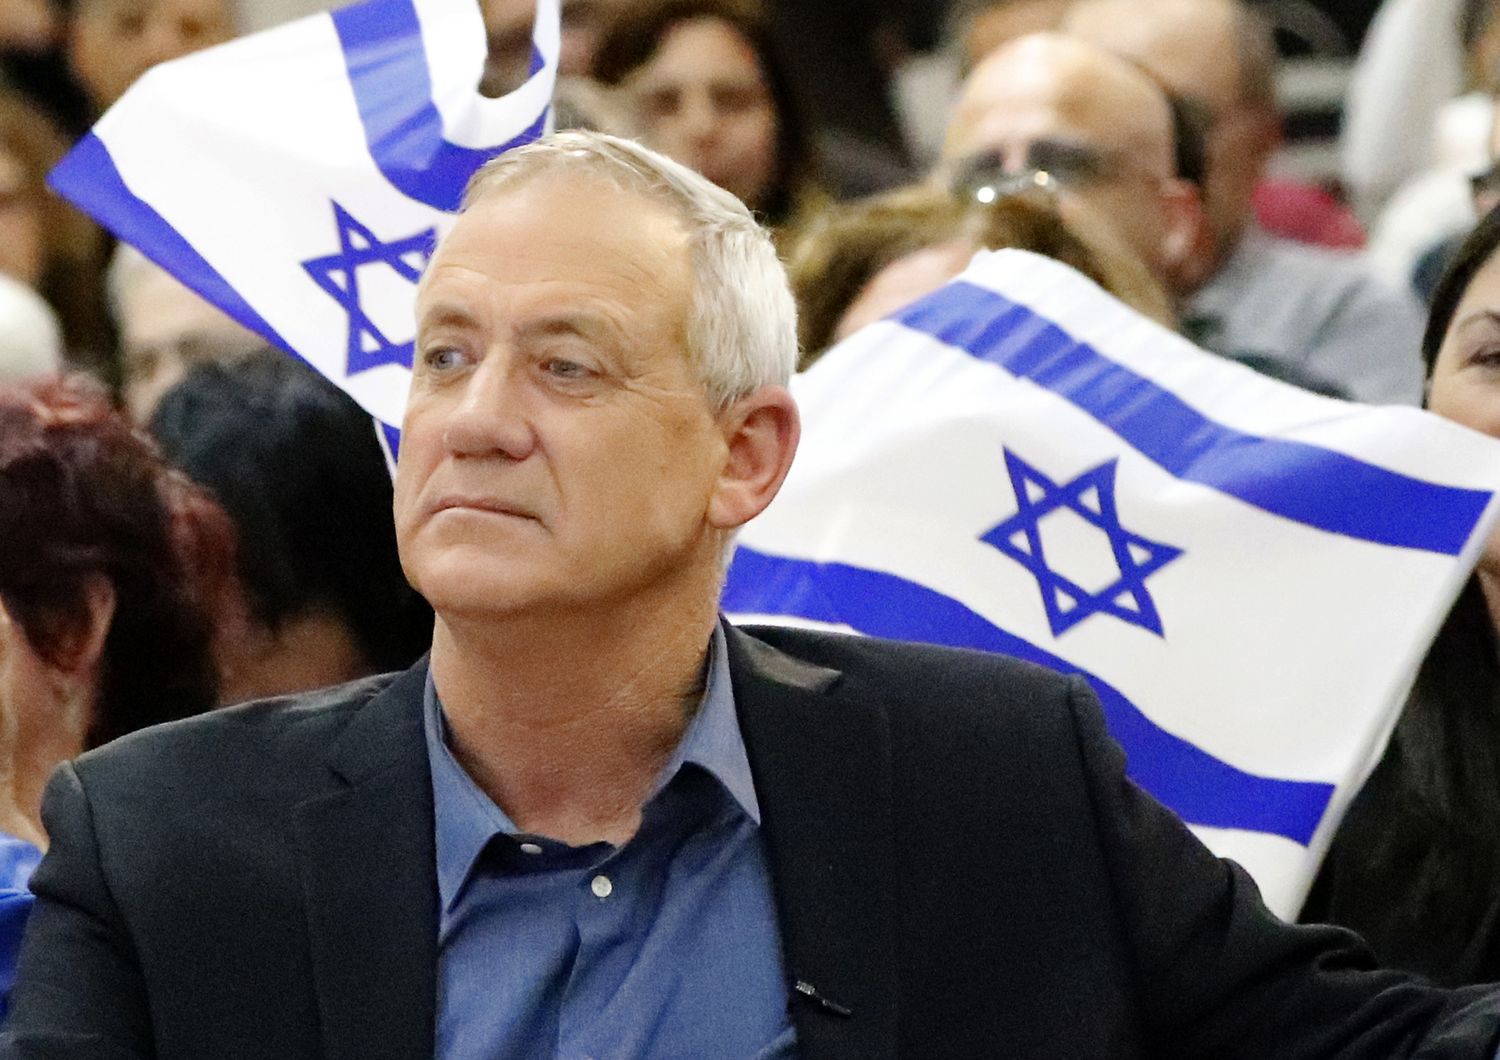 &nbsp;Benny Gantz, generale in congedo e sfidante di Benjamin Netanyahu alle elezioni israeliane del 2019 per il Partito Bianco e Blu (Jack Guez/AFP)